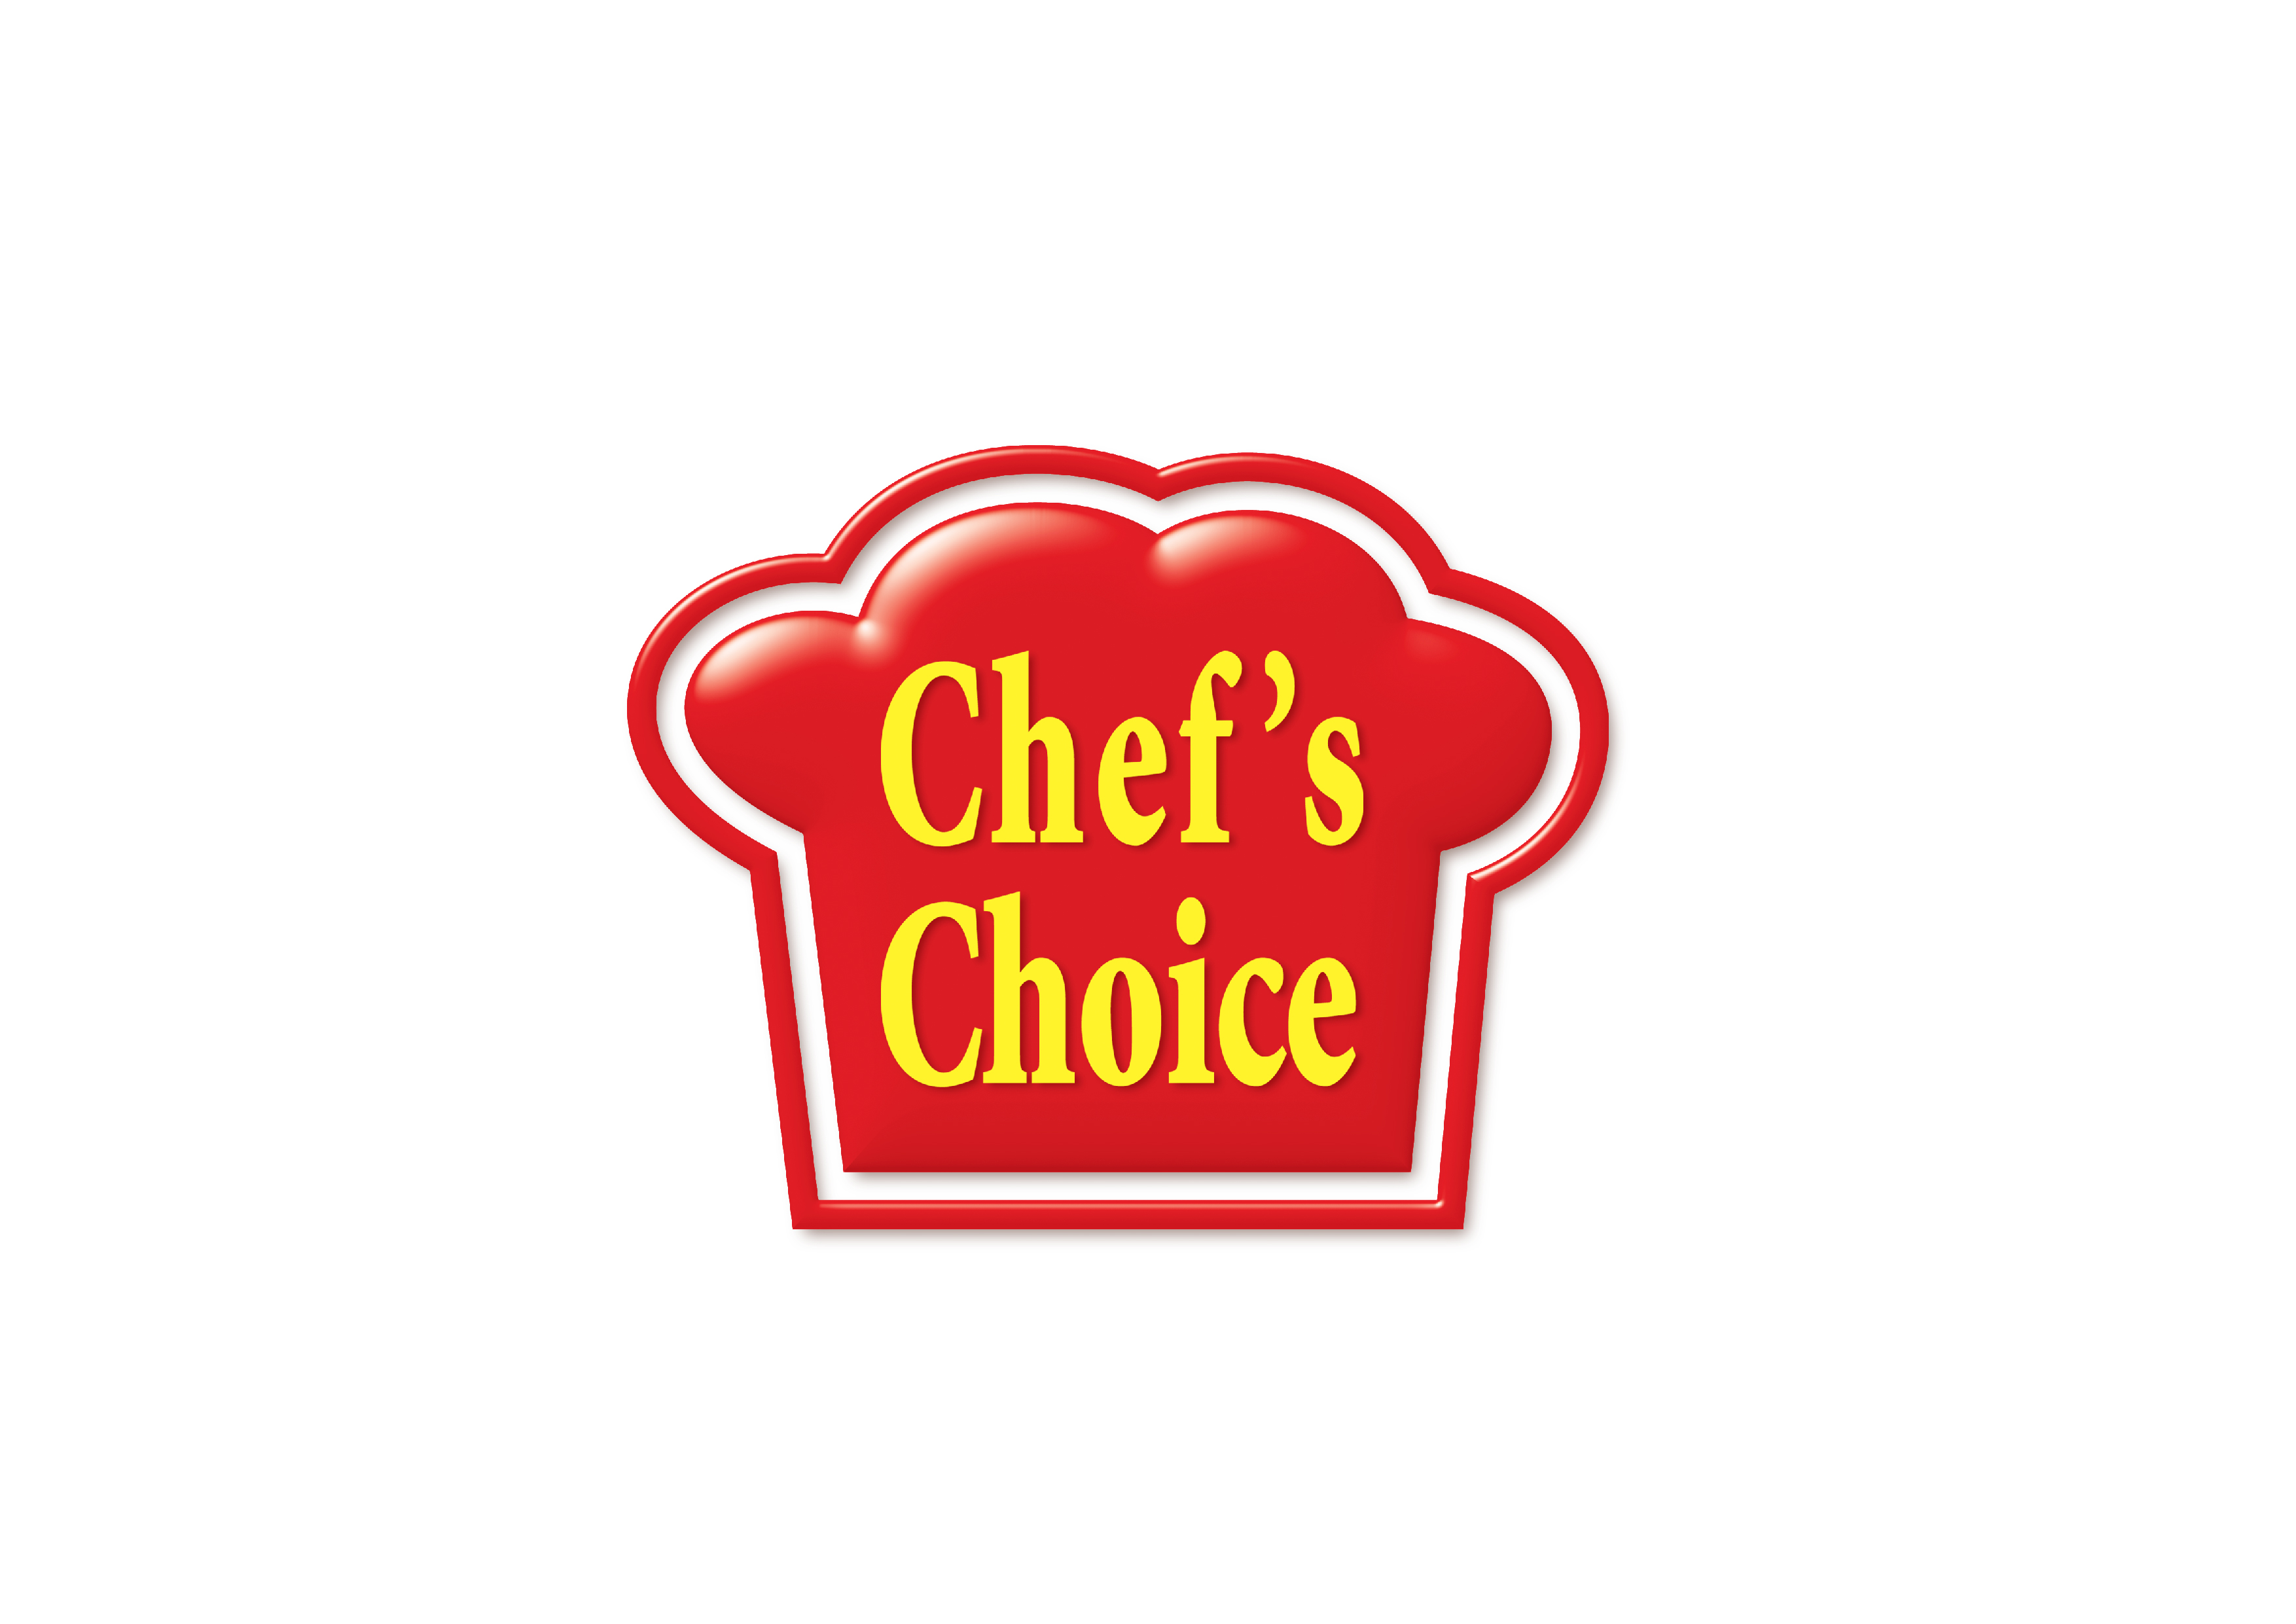 Chefs Choice Co